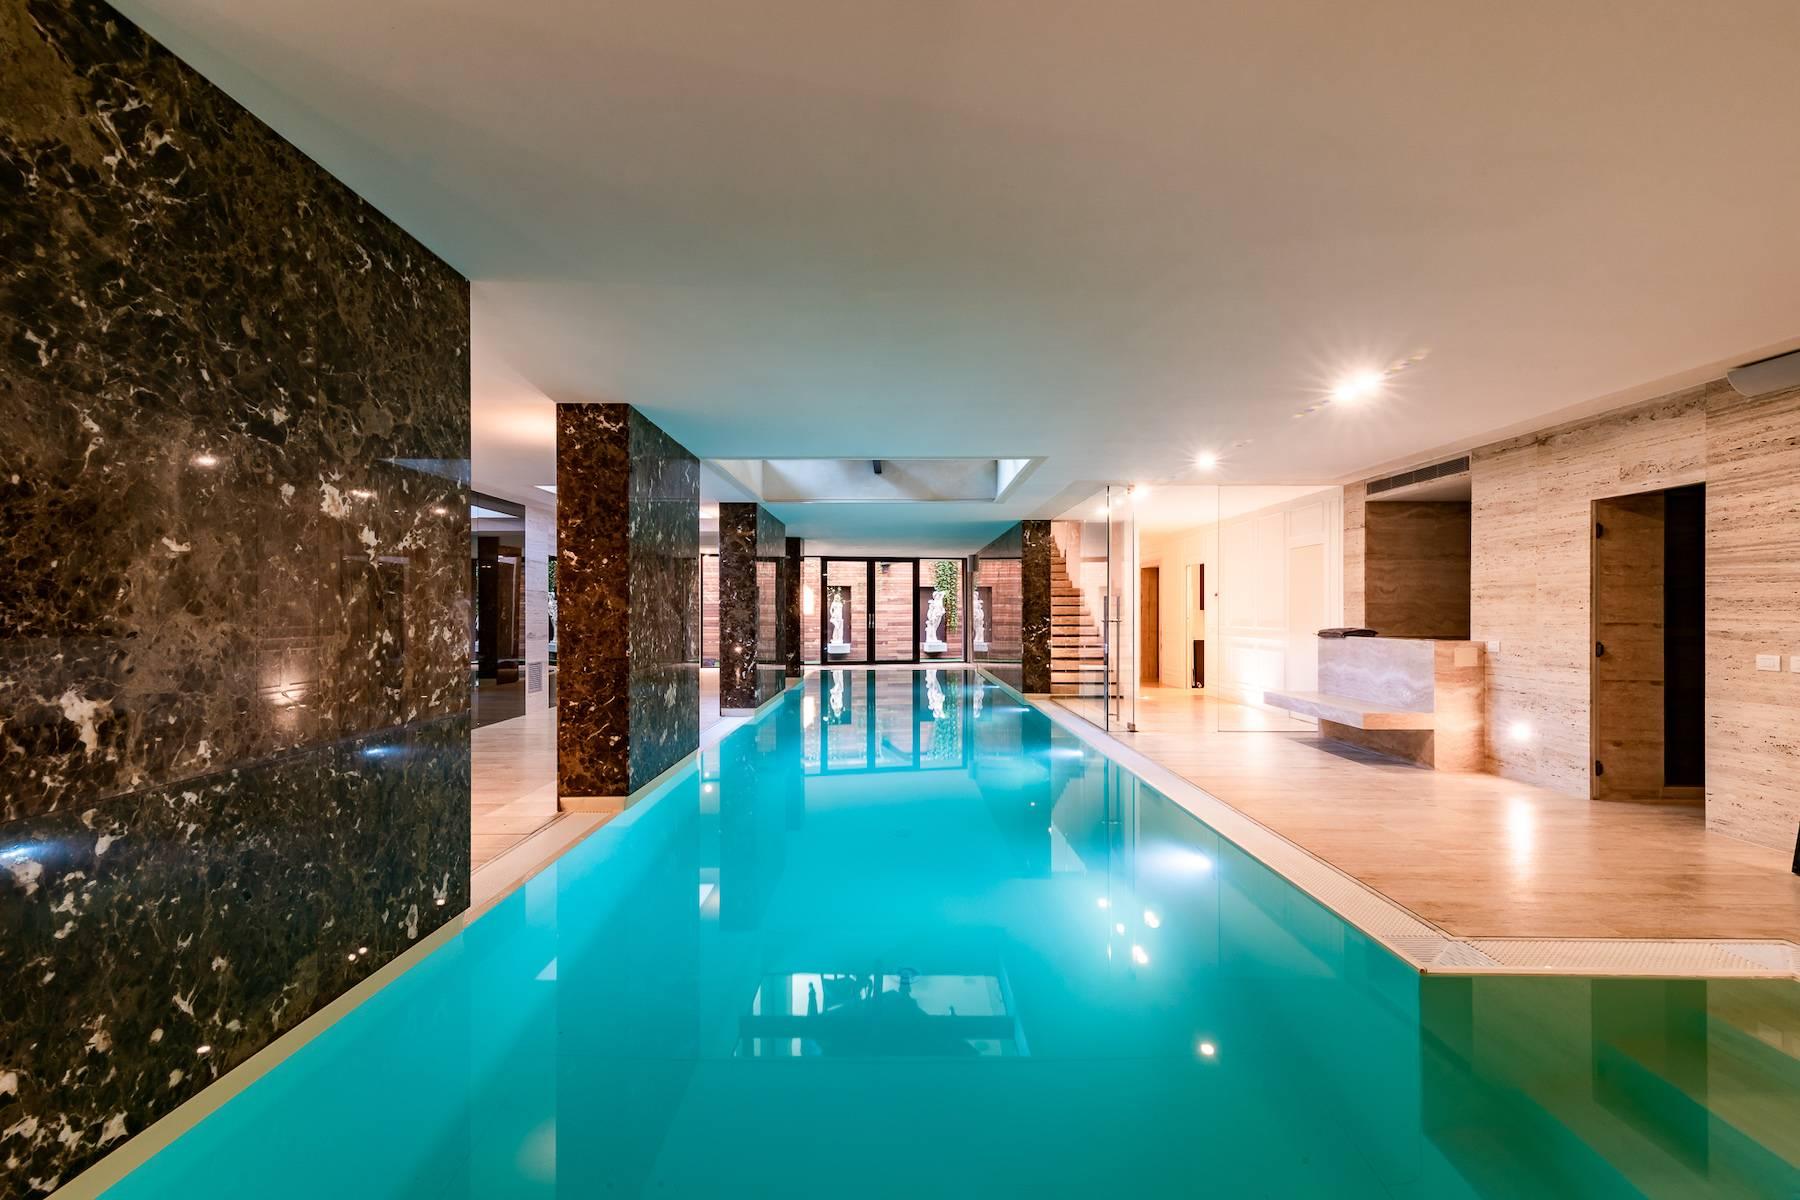 Repräsentative freistehende Villa mit Pool in der exklusiven San Siro Stadtviertel - 1